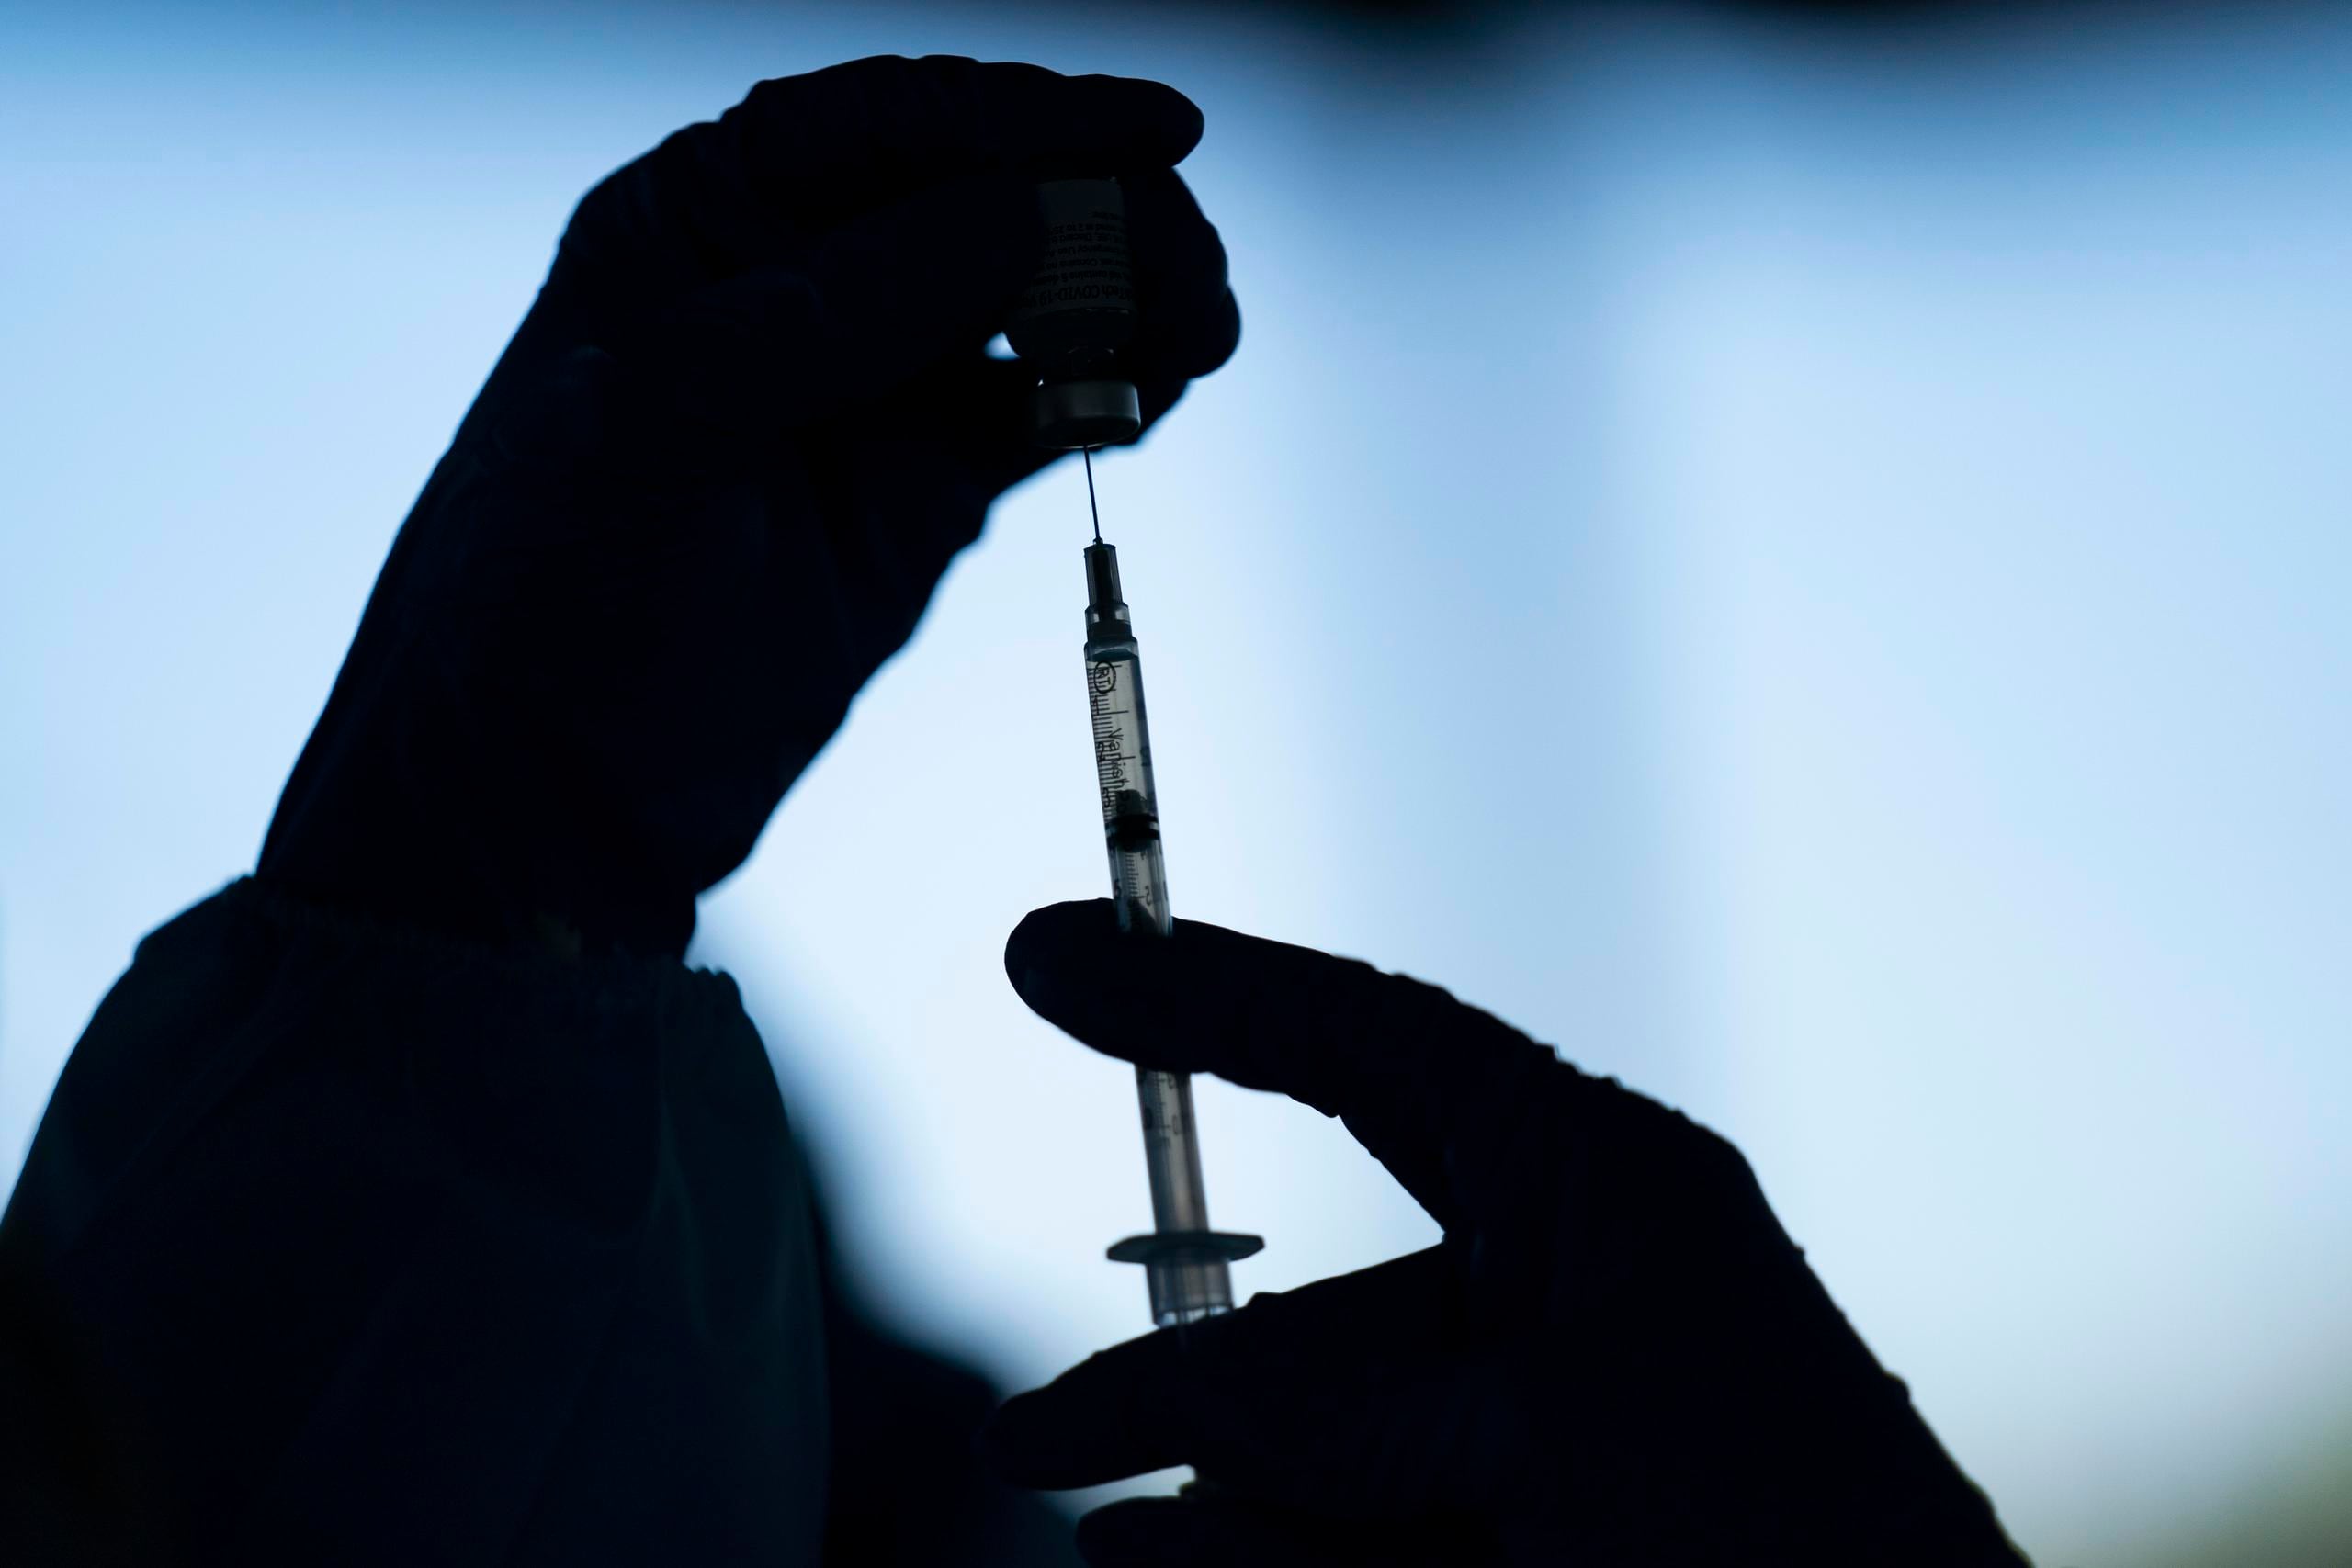 Una vacunación más igualitaria “es la forma más rápida de acabar con la pandemia”, señaló Tedros Adhanom Ghebreyesus, director general de la Organización Mundial de la Salud.